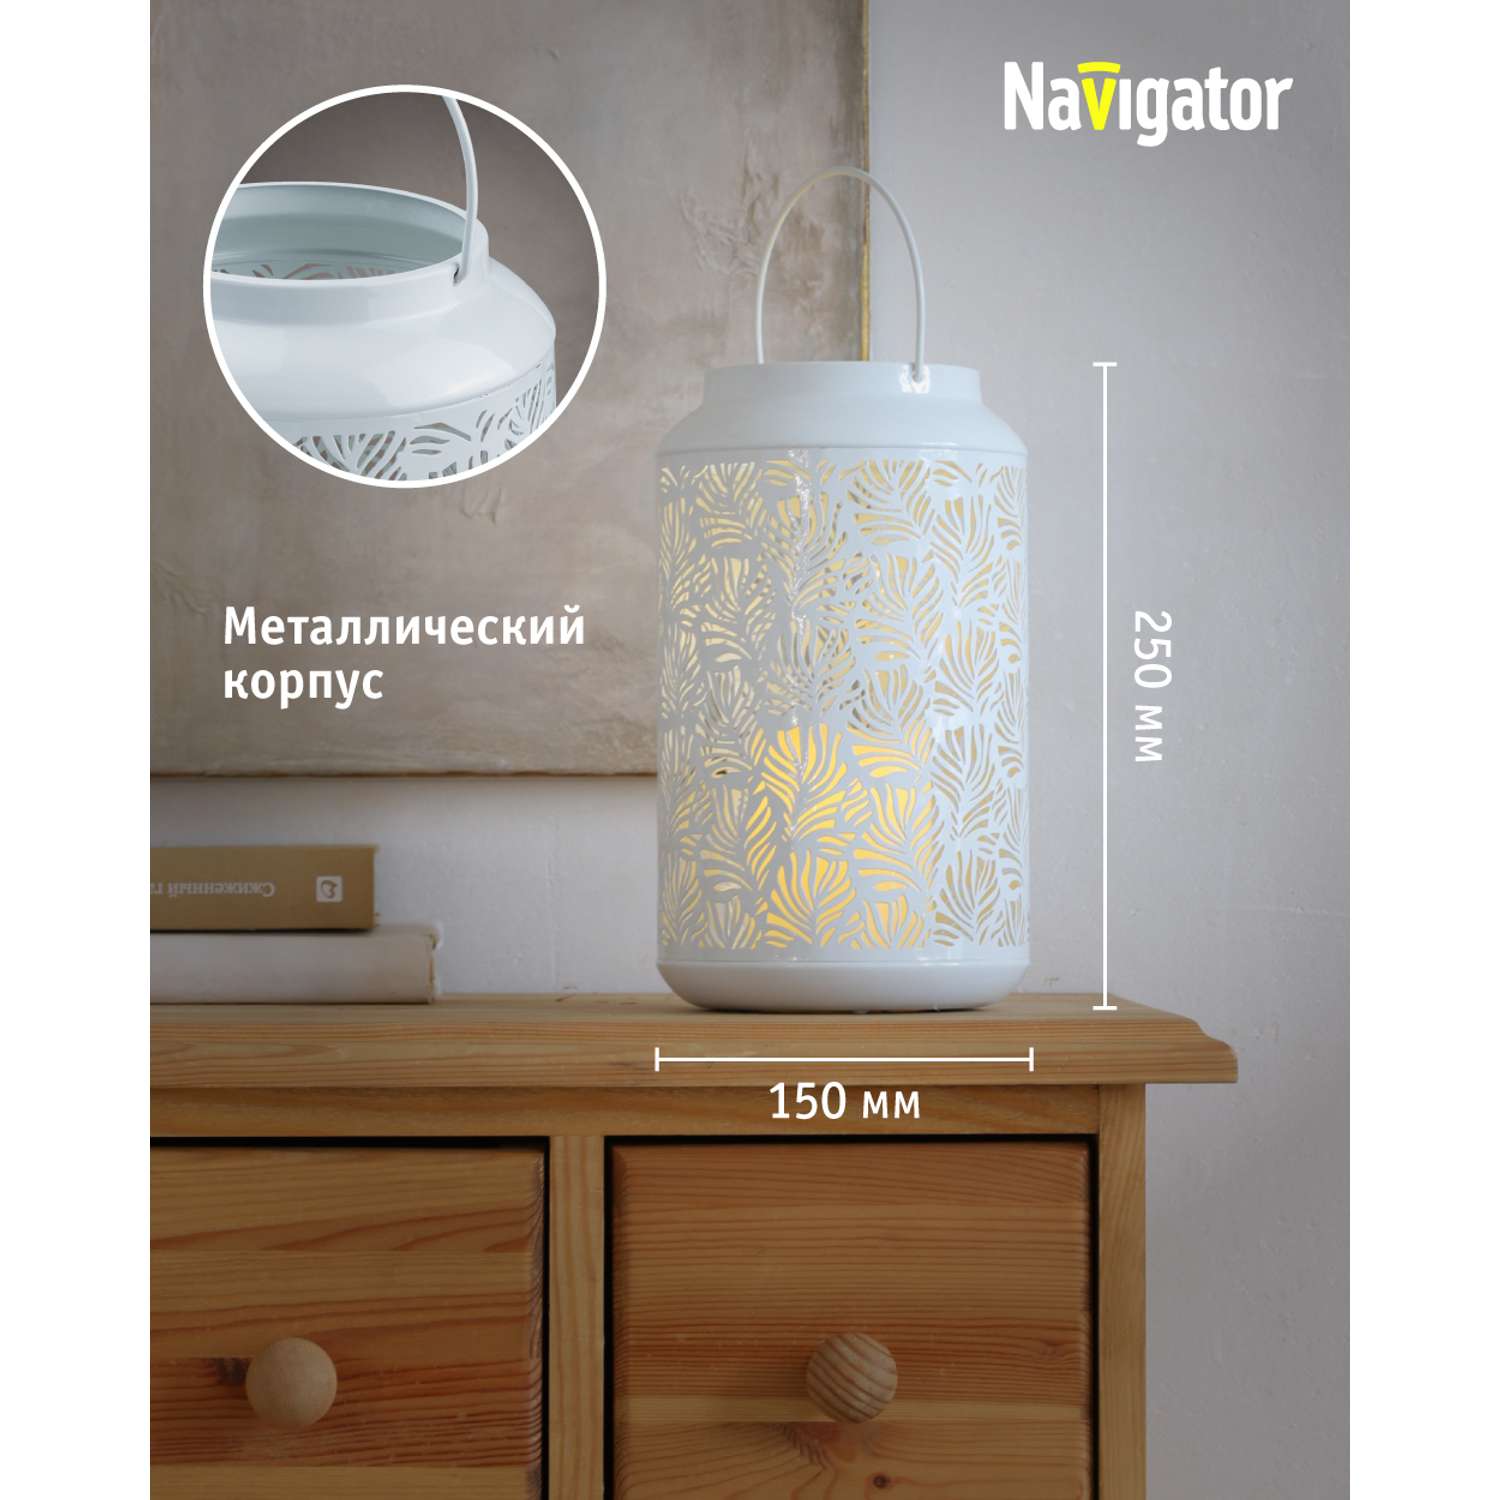 Декоративный светильник-ночник NaVigator светодиодный для детской комнаты узор флора - фото 3